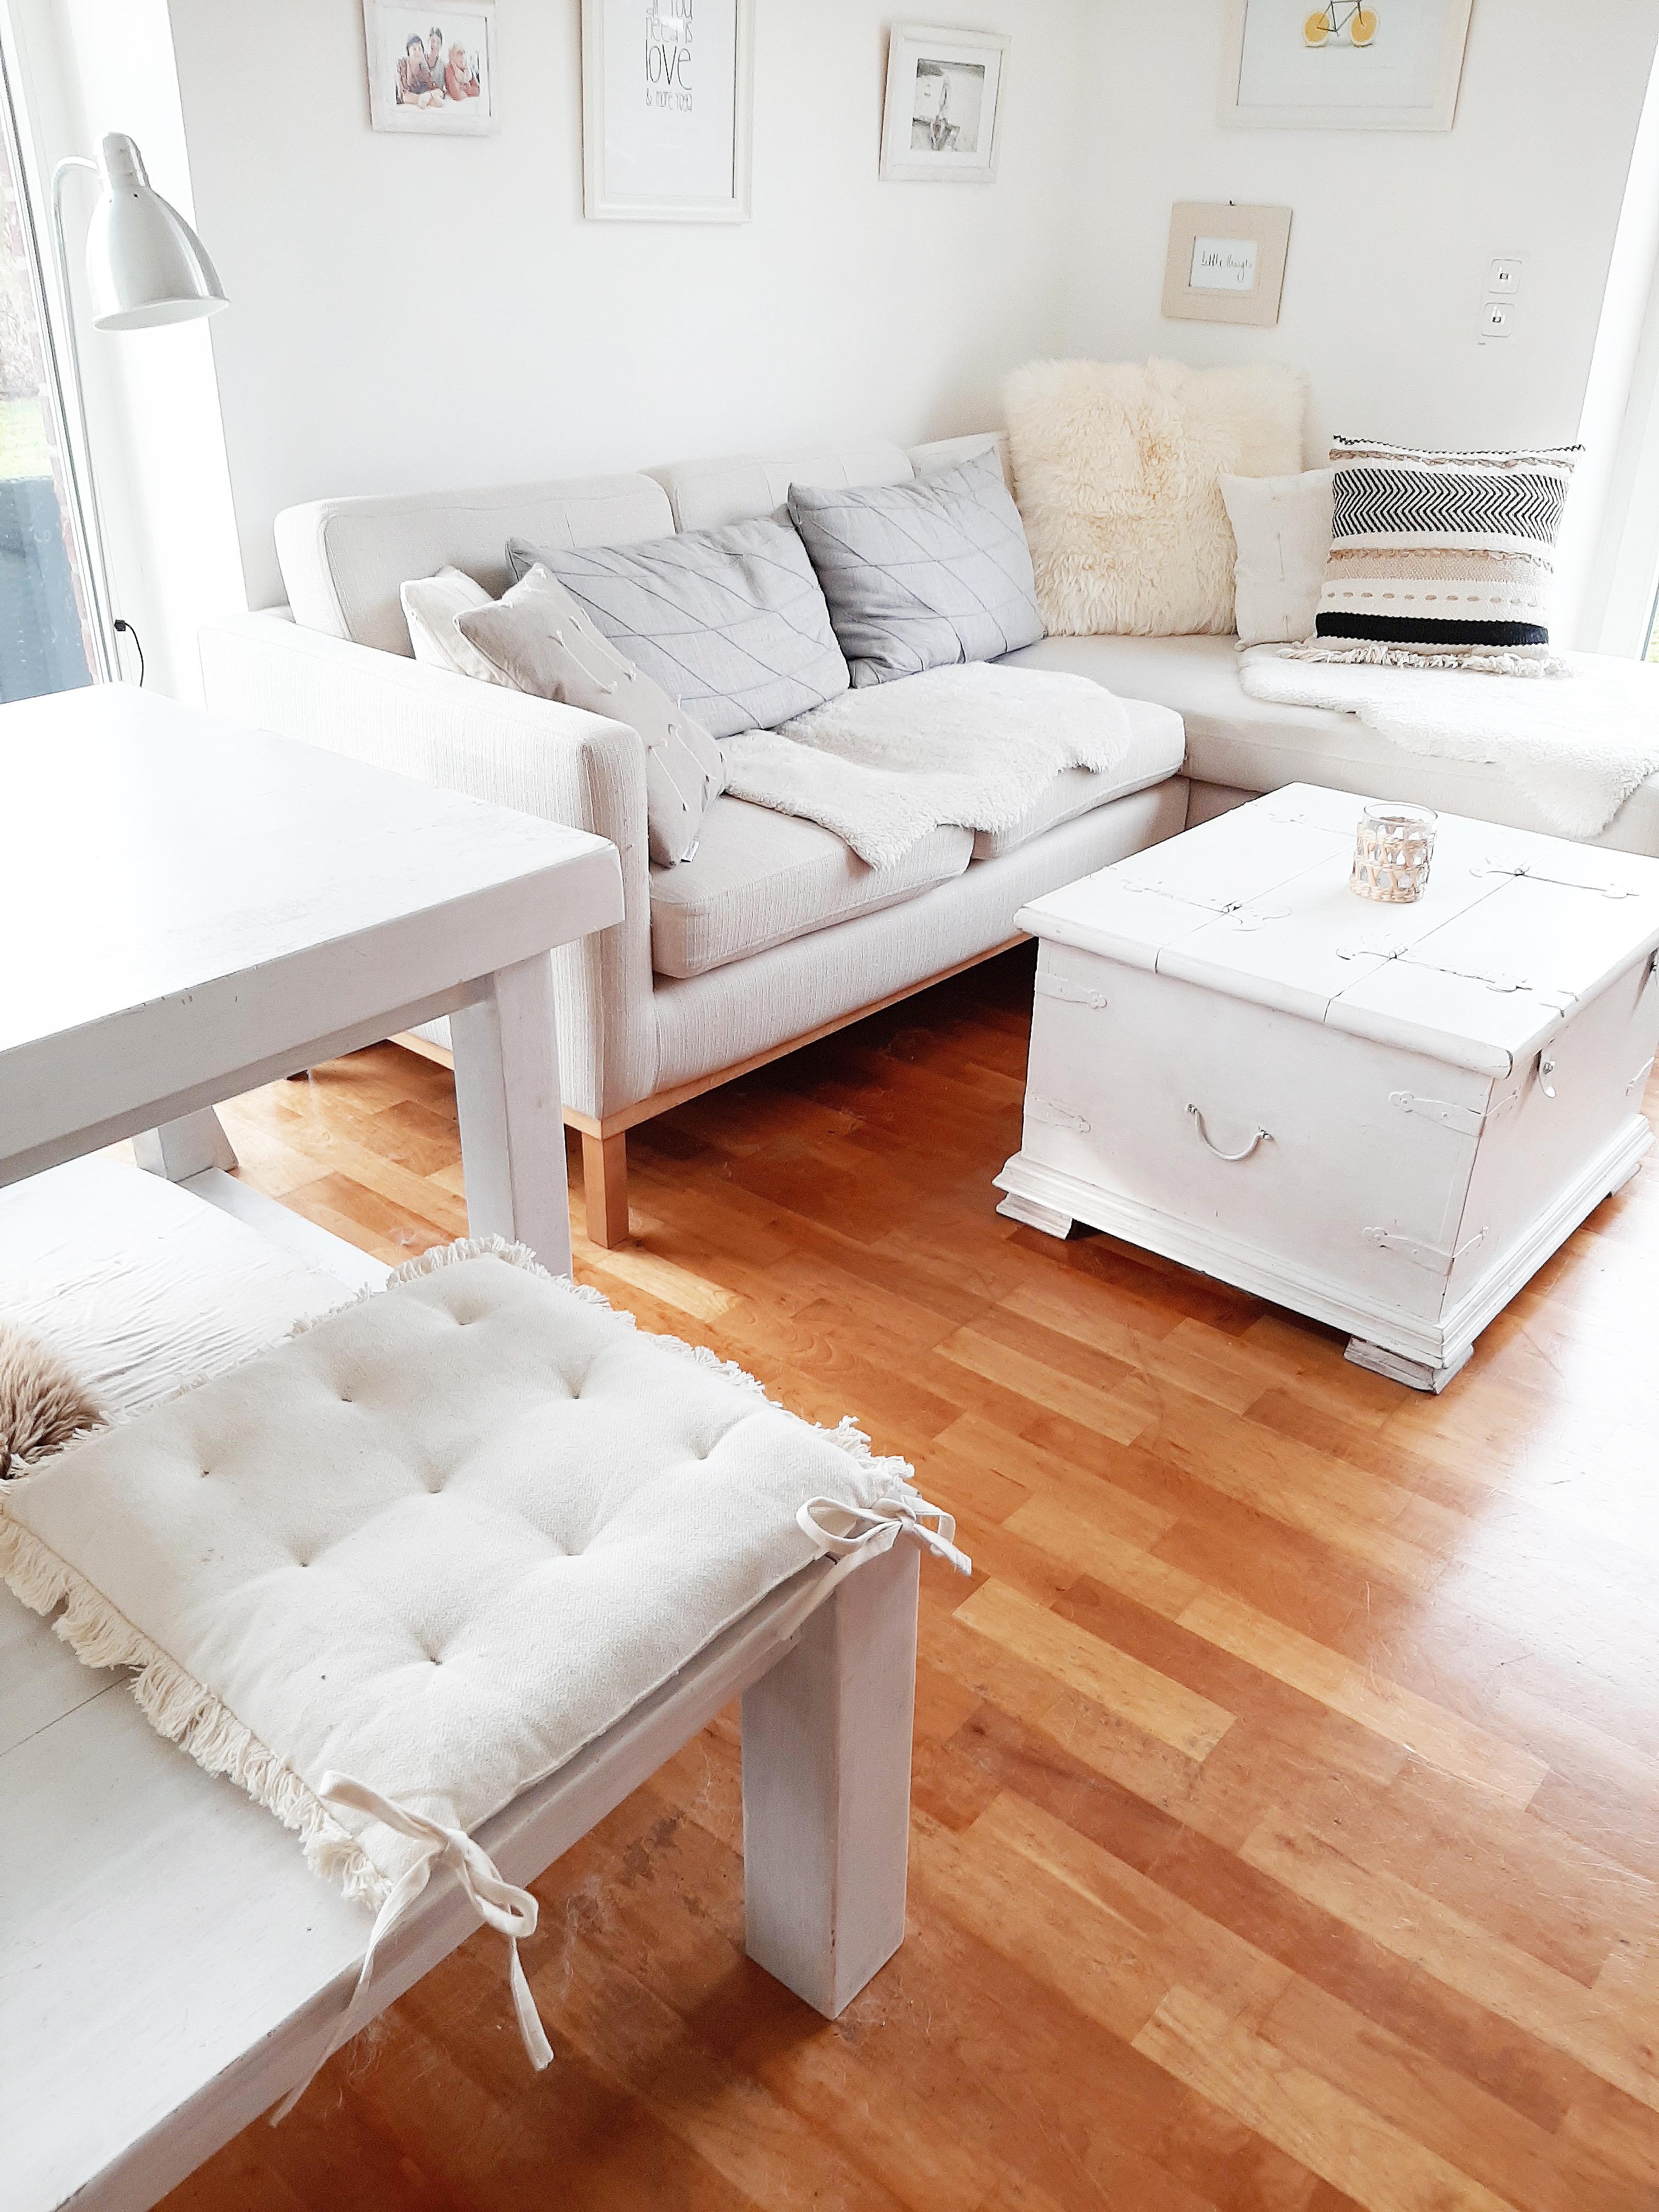 W o h n e n ♡
#wohnzimmer #chillecke #sofa #couchtisch #livingroom #lieblingsraum #couchliebt